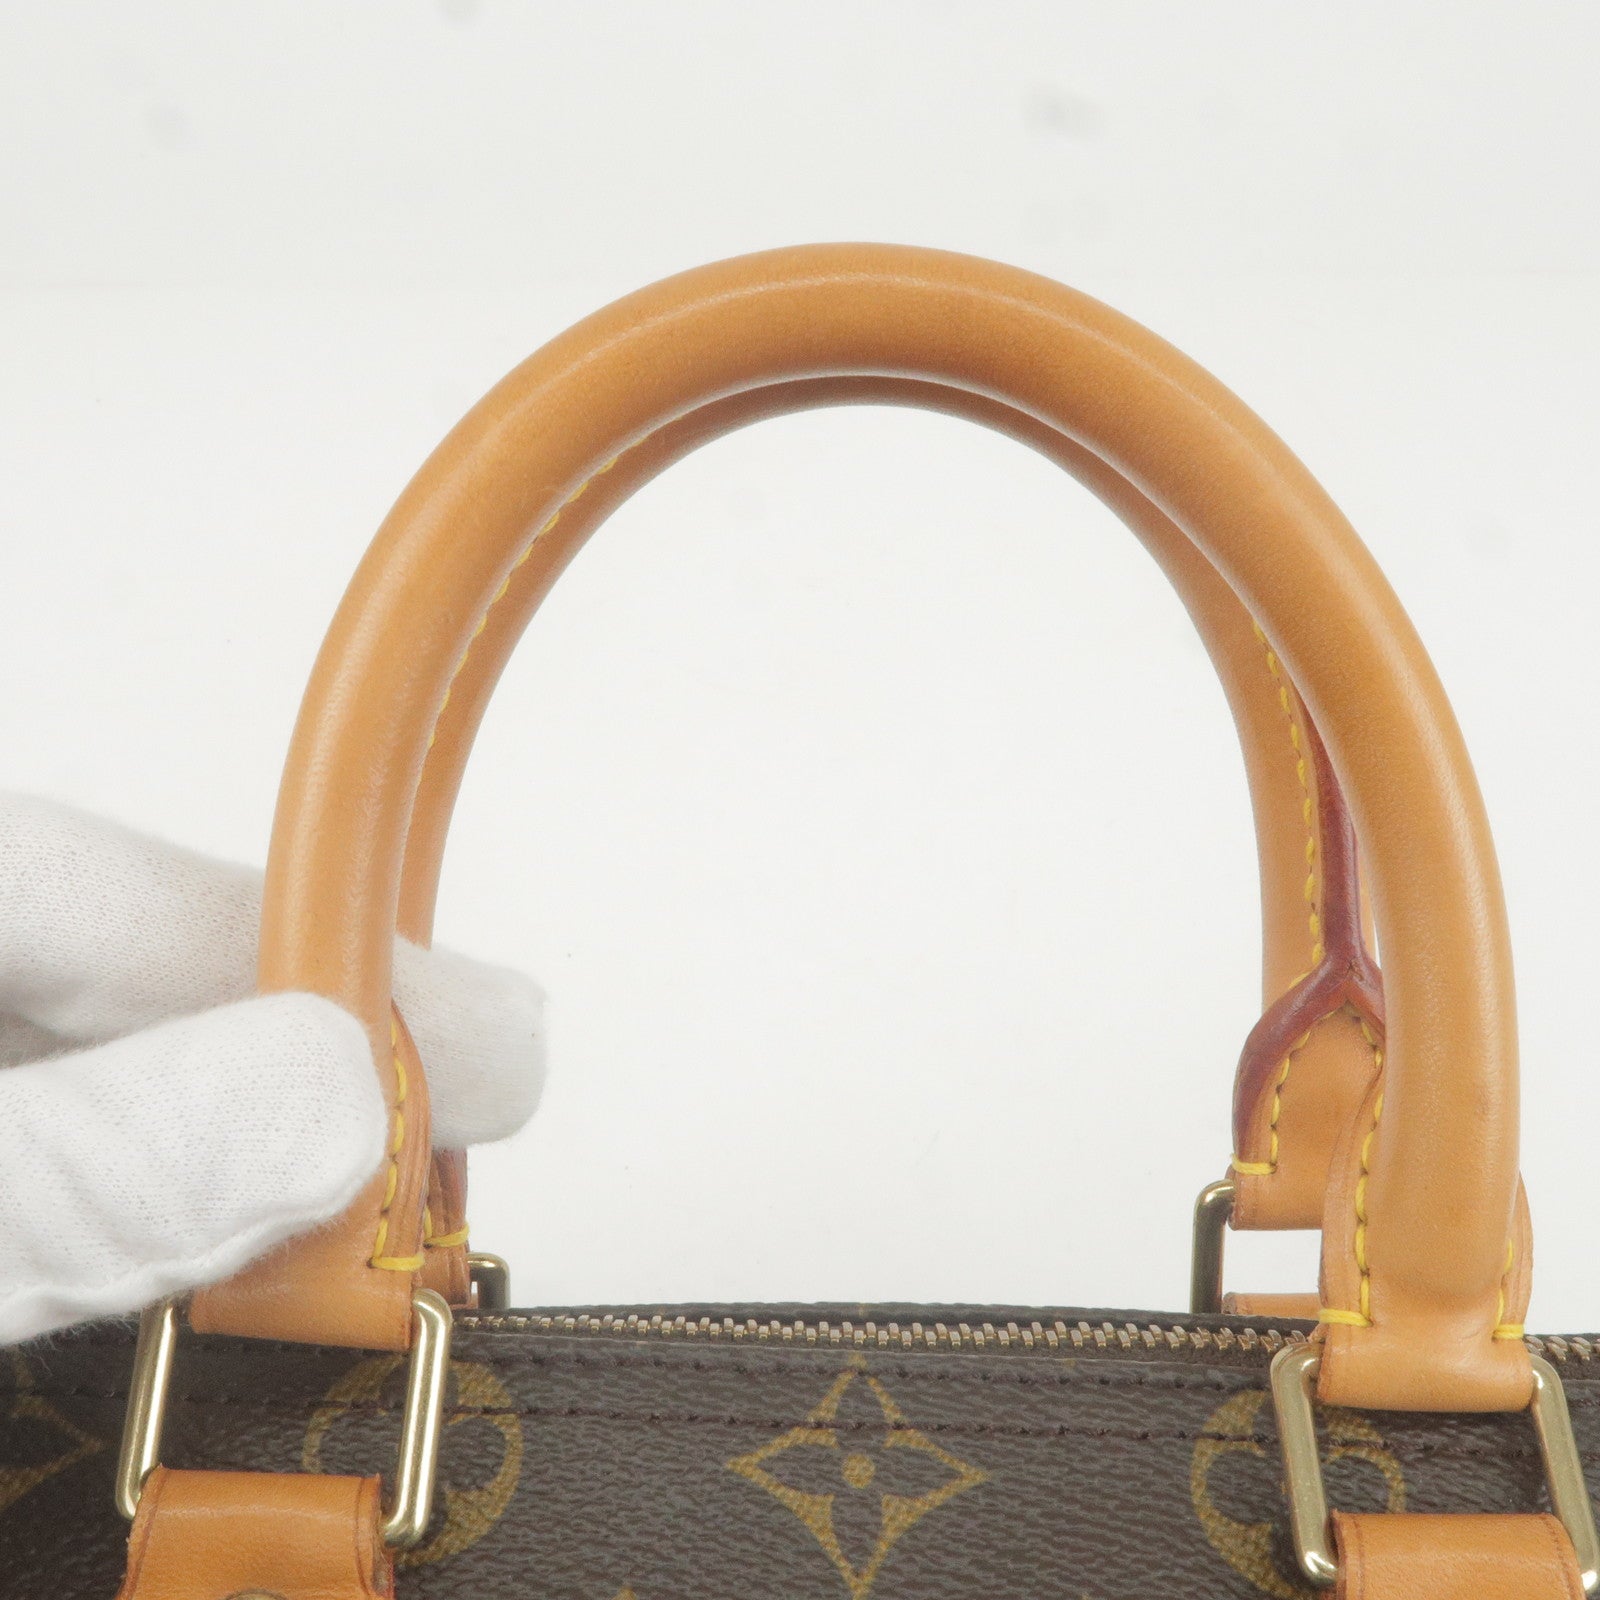 Louis Vuitton Monogram Speedy 25 Malletier Hand Bag M41528